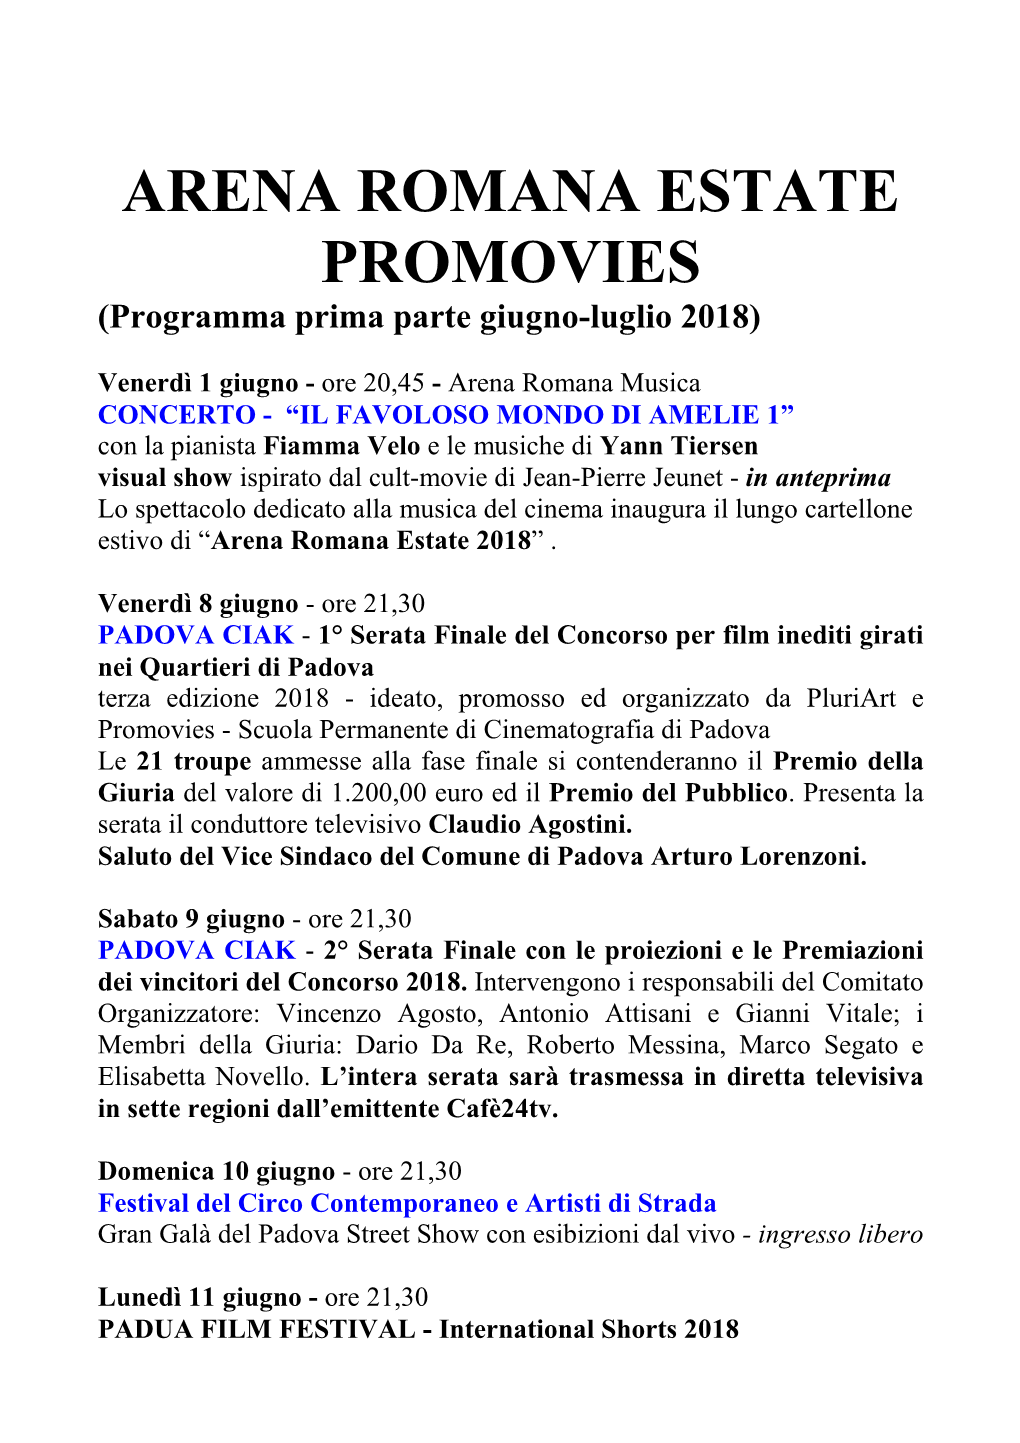 ARENA ROMANA ESTATE PROMOVIES (Programma Prima Parte Giugno-Luglio 2018)